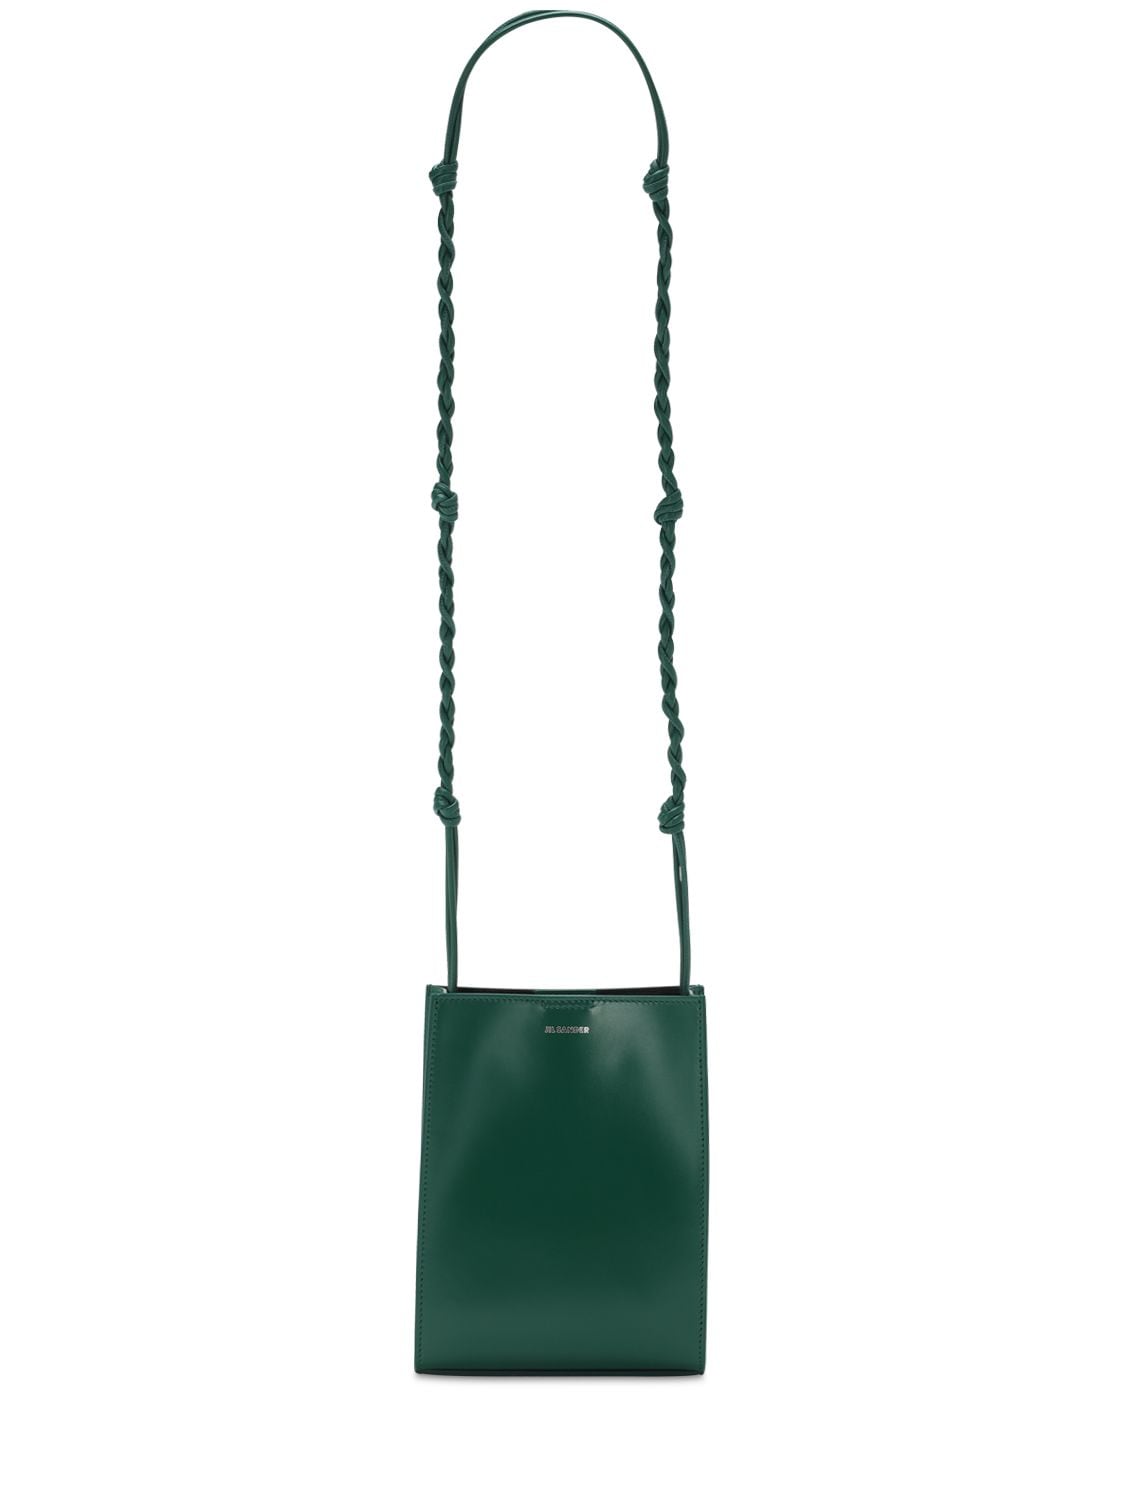 Jil Sander Sm Tangle Leather Shoulder Bag In Bright Green